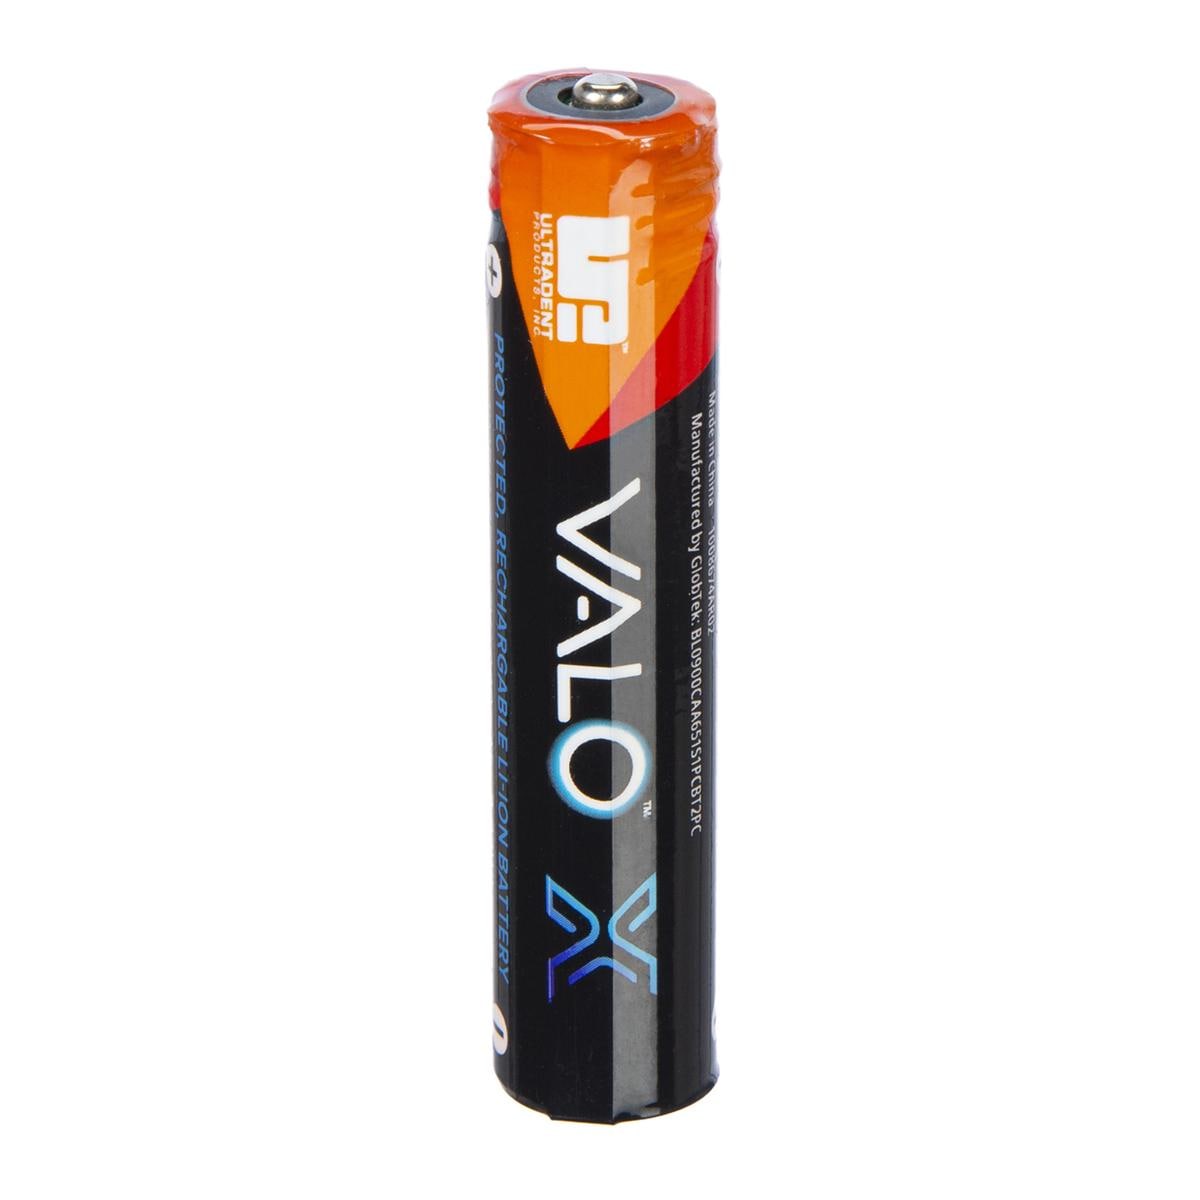 Batteries rechargeables VALO X - UP 5437, 2 pcs